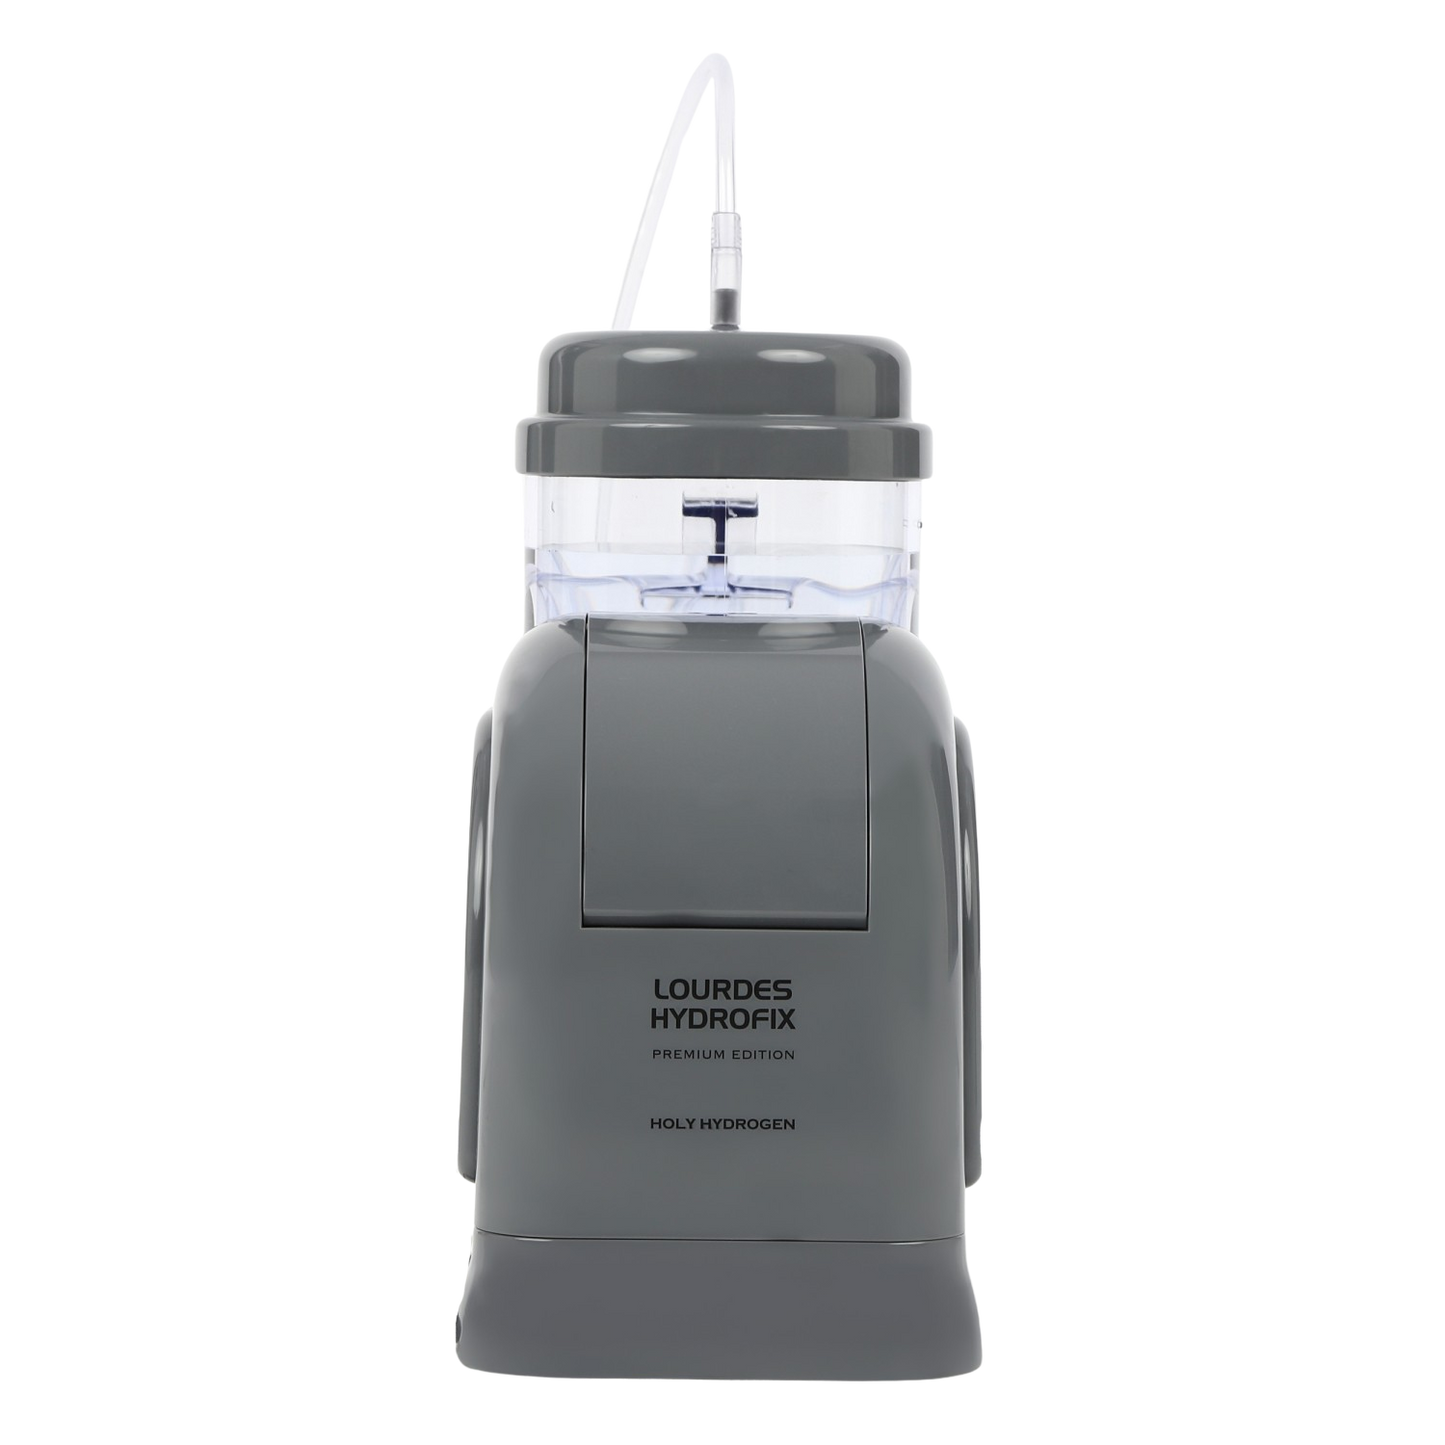 Lourdes Hydrofix Premium Edition - Complete Bundle - Includes a FREE Inhalation Kit. A $120 Value